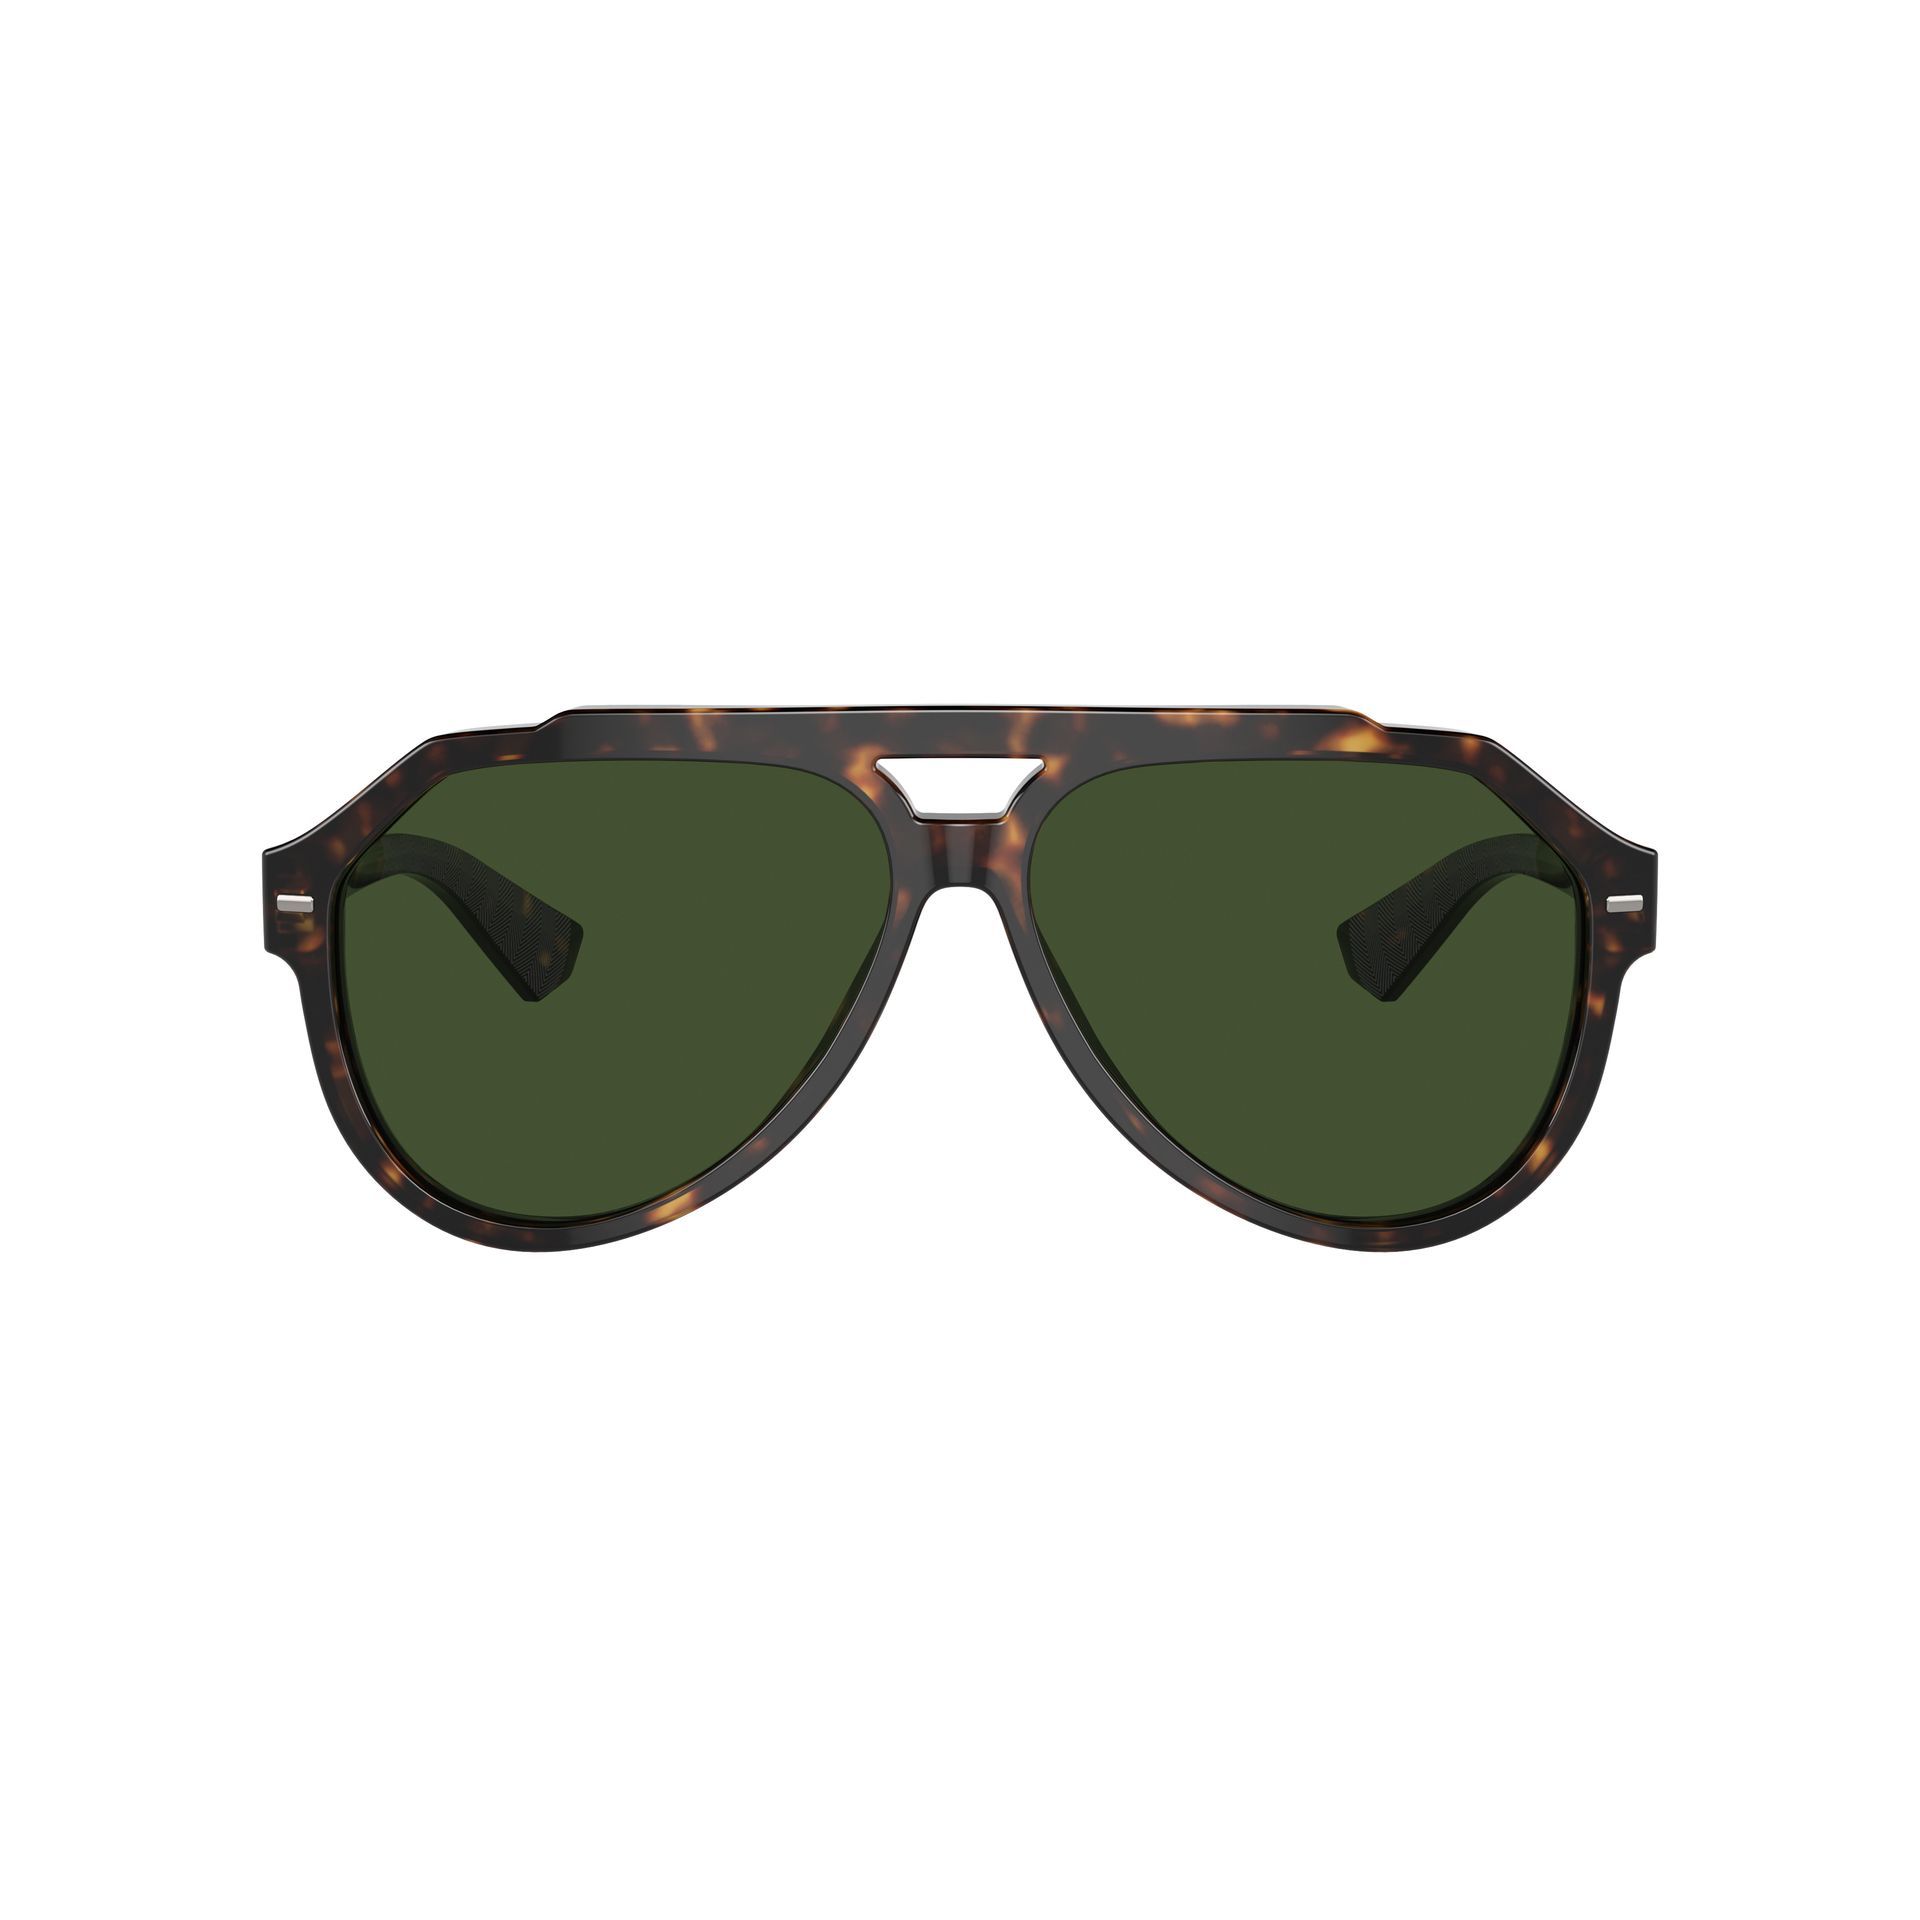 0DG4452 Pilot Sunglasses 502 71 - size 60